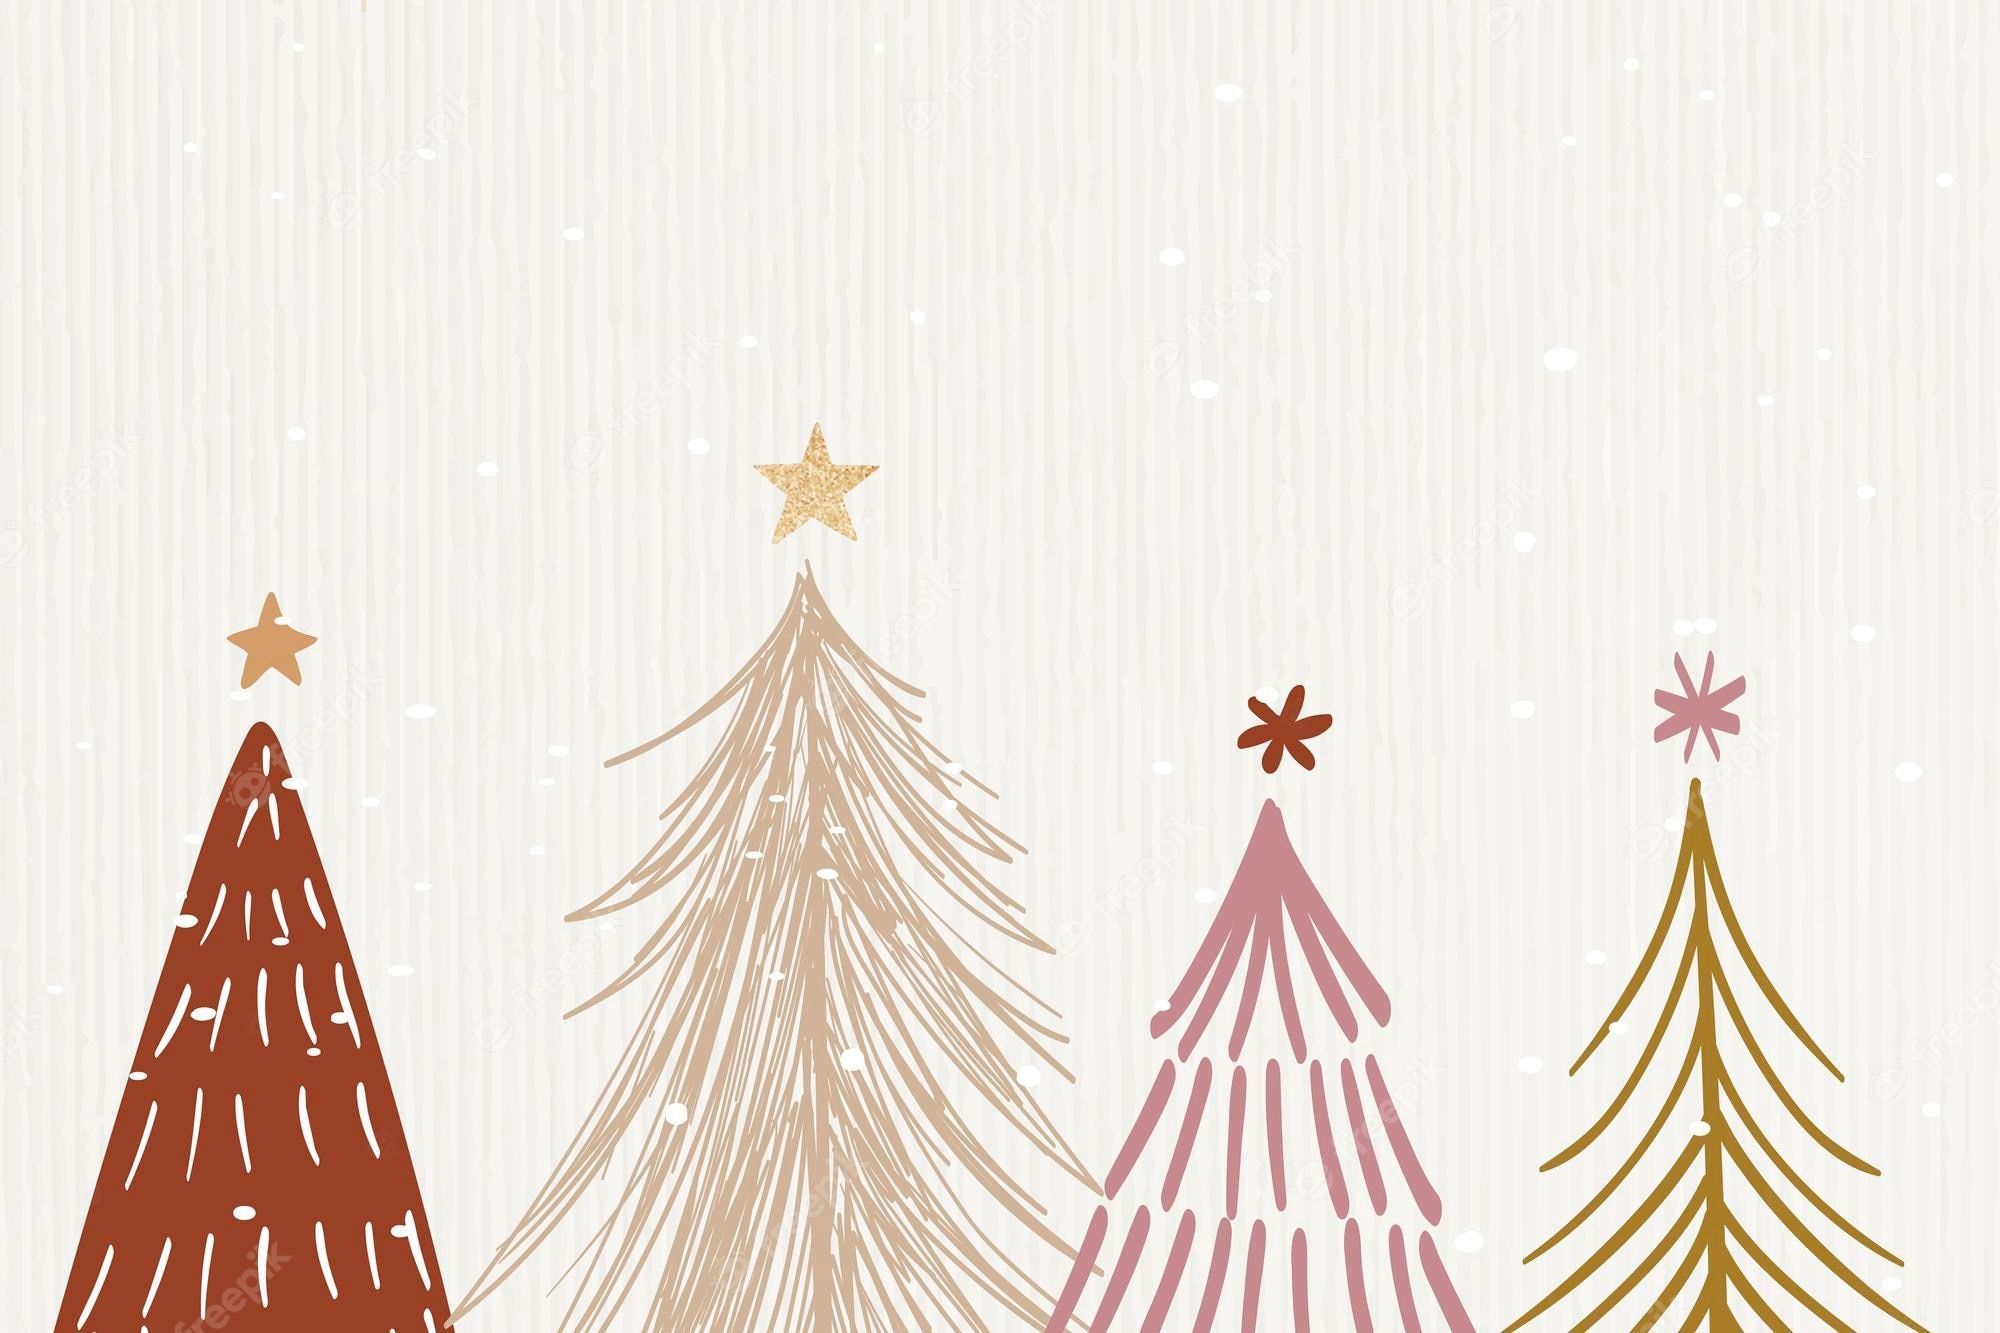  Weihnachtsbaum Hintergrundbild 2000x1333. Christmas Wallpaper Bilder Download auf Freepik